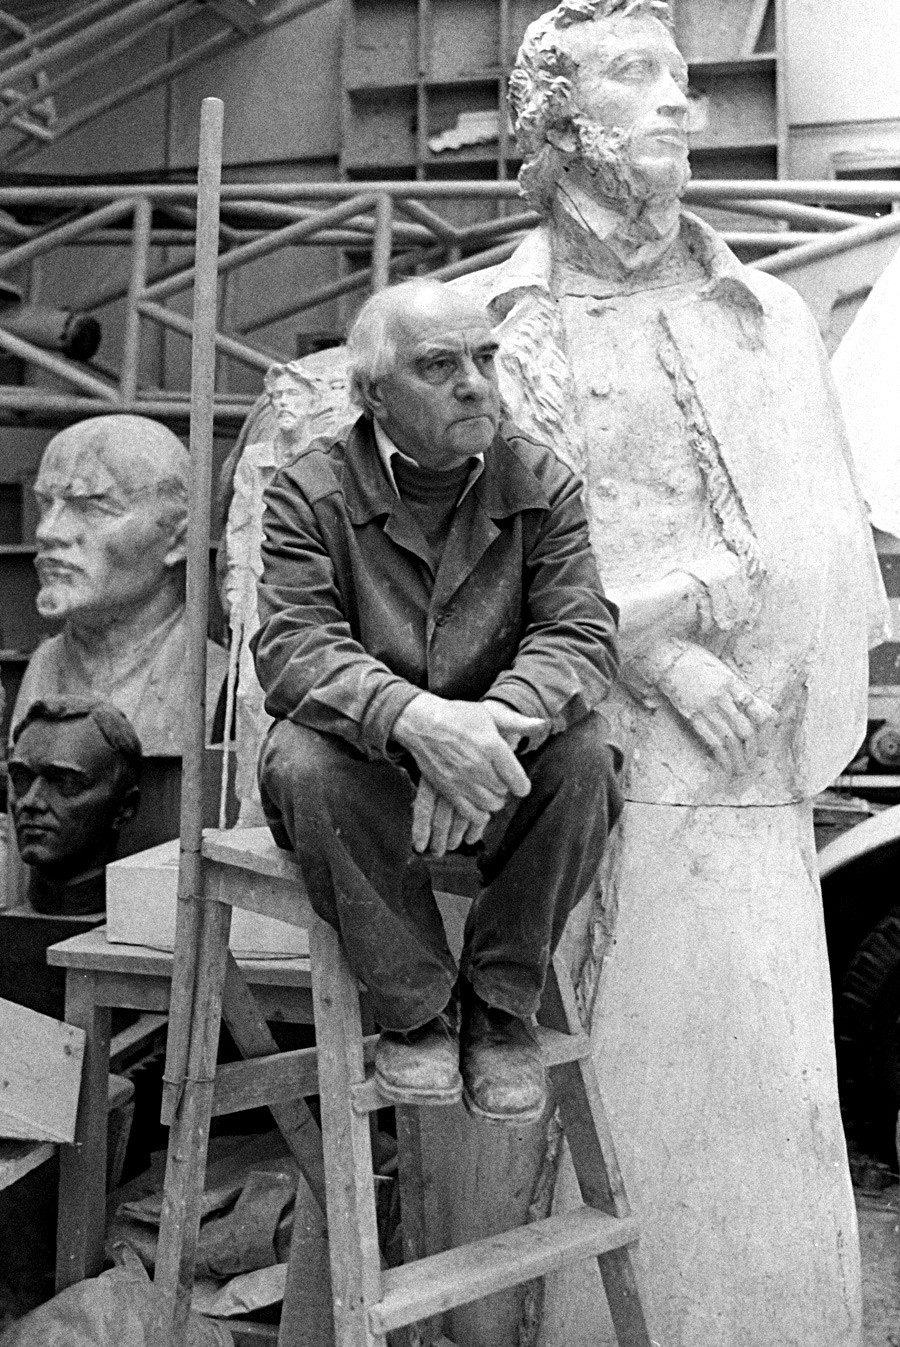 Obwohl die staatliche Kommission das Alexander-Puschkin-Denkmal von Michail Anikuschin von 1957 bereits abgesegnet hatte, war der Künstler selbst so unzufrieden, dass er auf eigene Kosten ein Neues schuf. Heute steht es auf dem Platz der Künste in Sankt Petersburg.